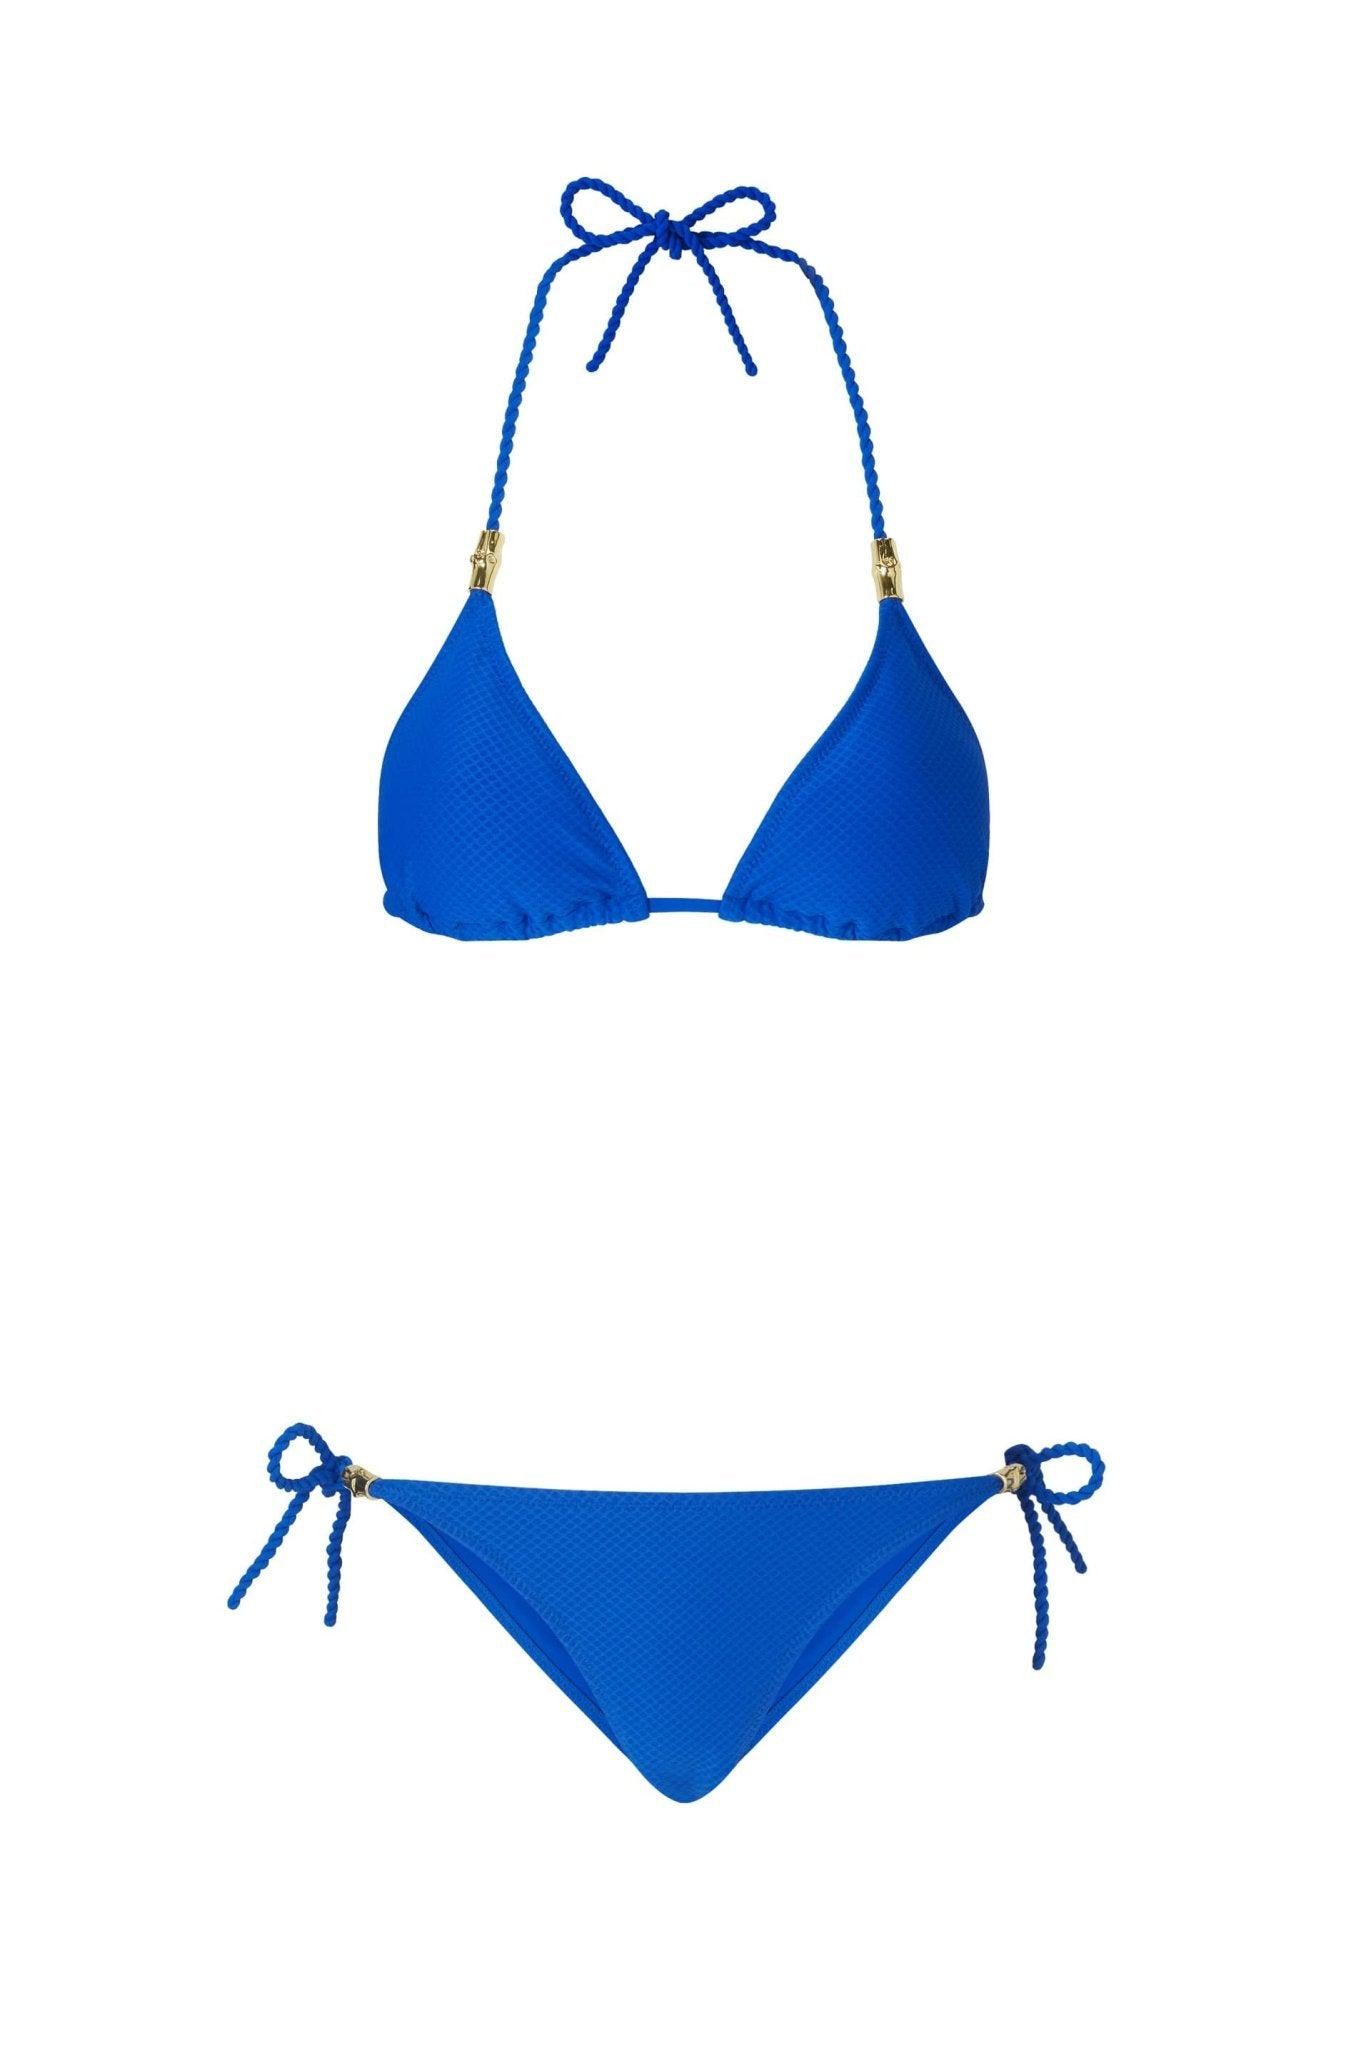 Electric Blue Triangle Bikini